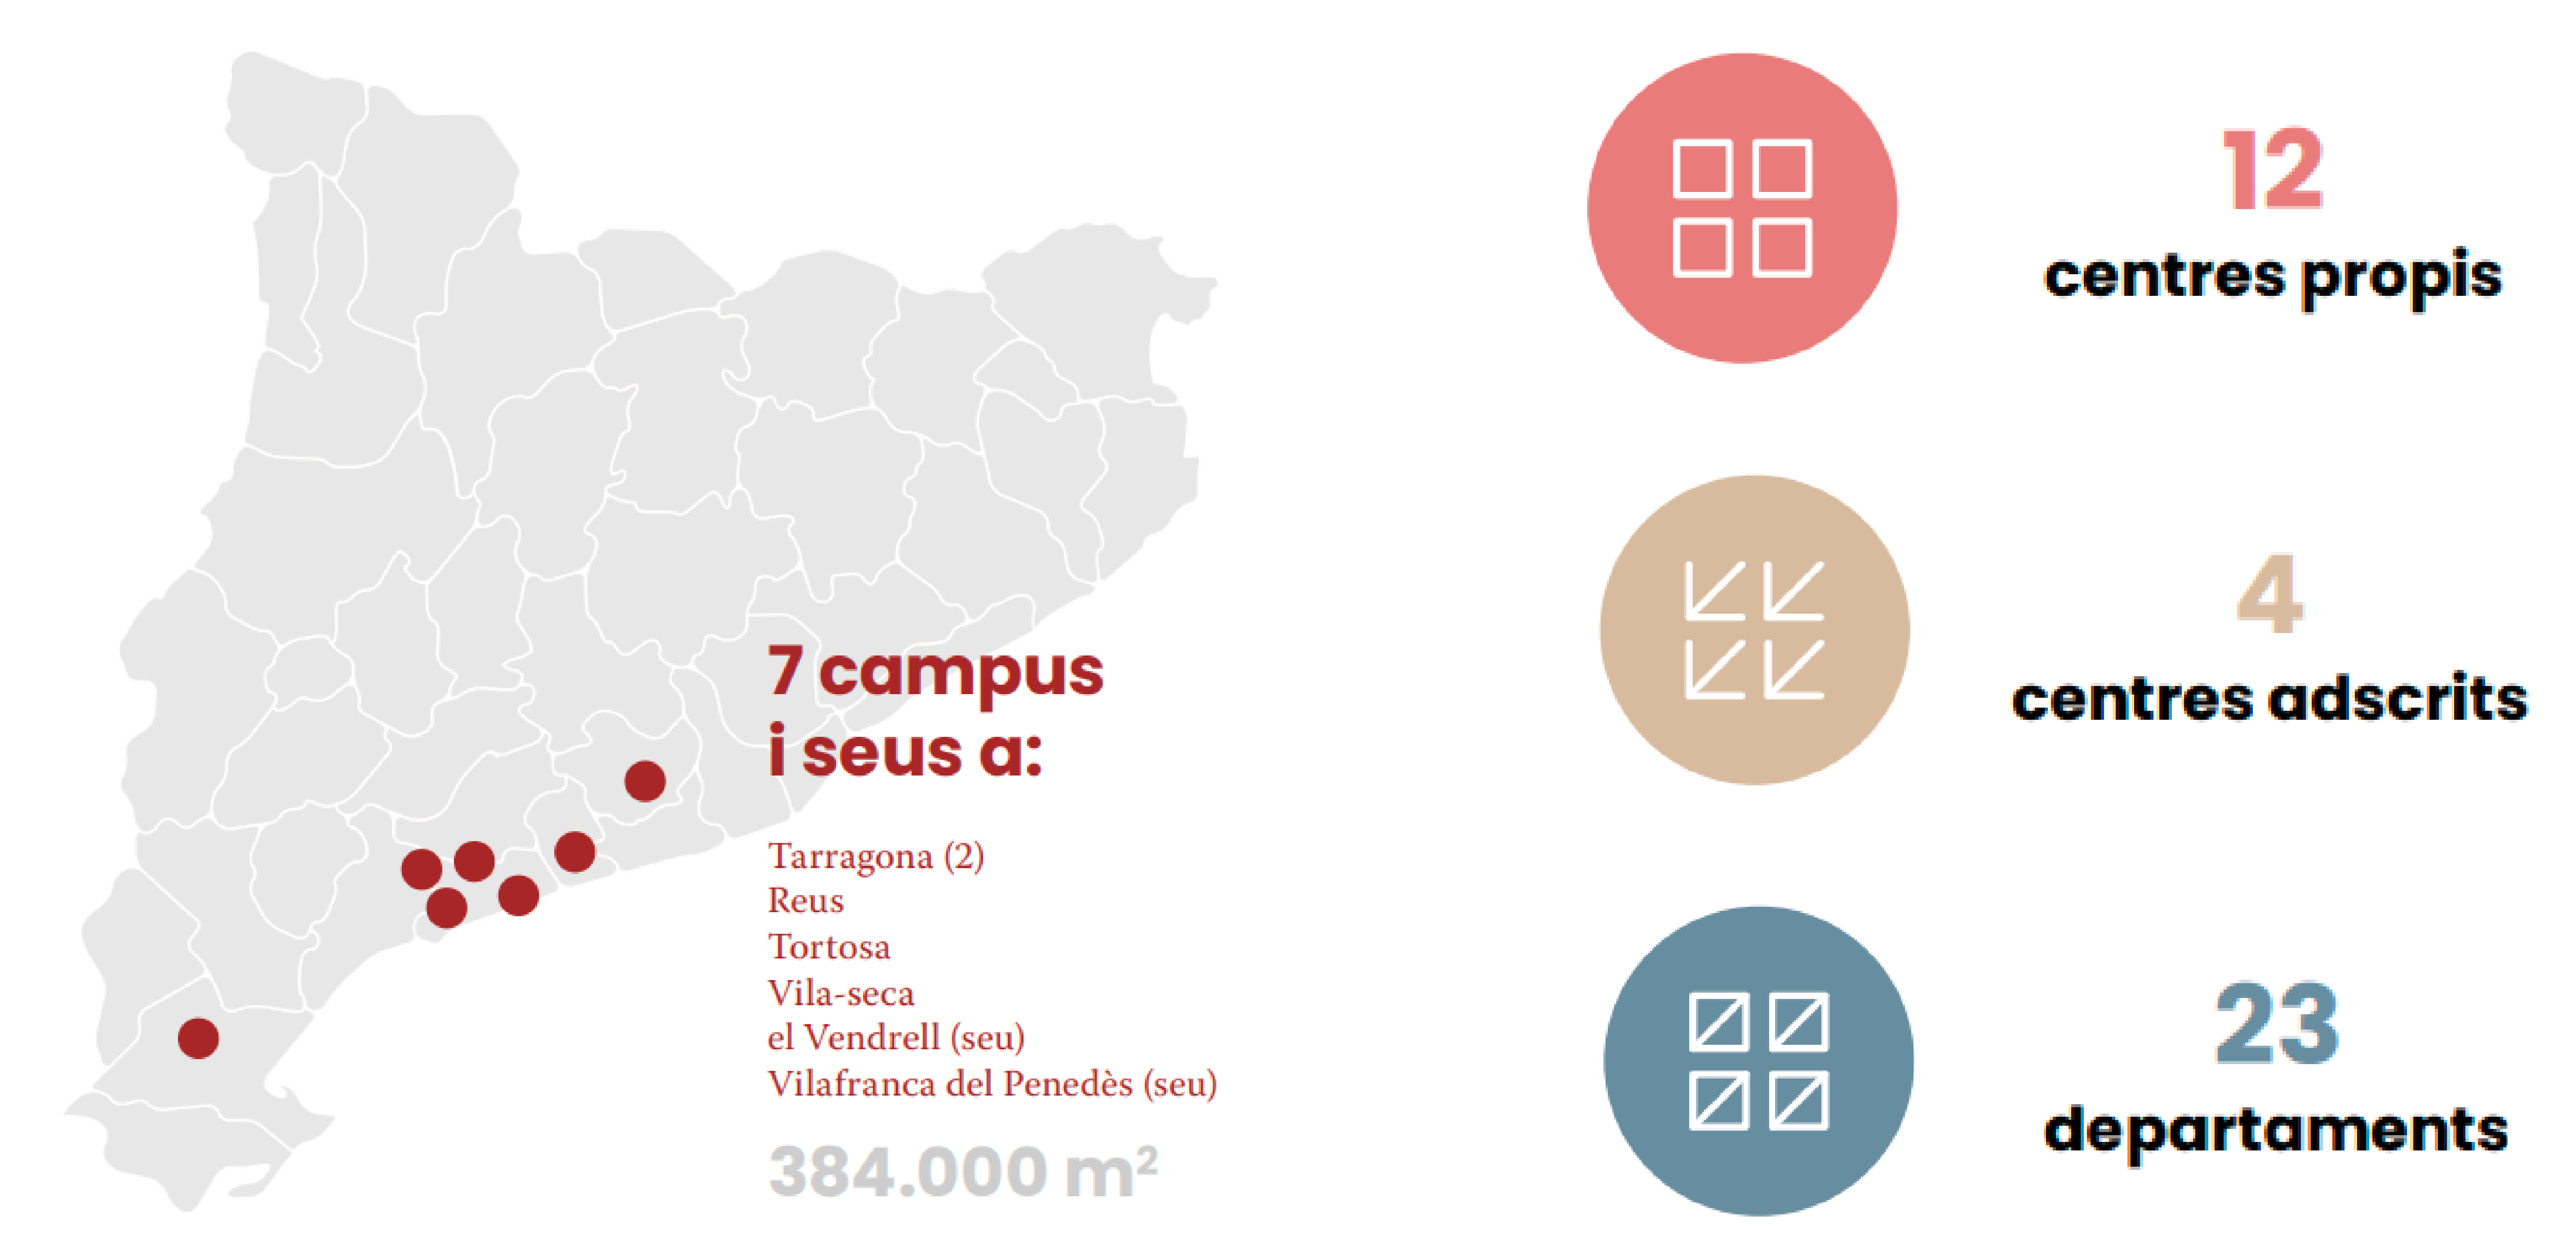 Mapa de Catalunya amb les seus URV marcades: 12 centres propis; 4 centres adscrits; i 23 departament. 384.000 metres quadrats.